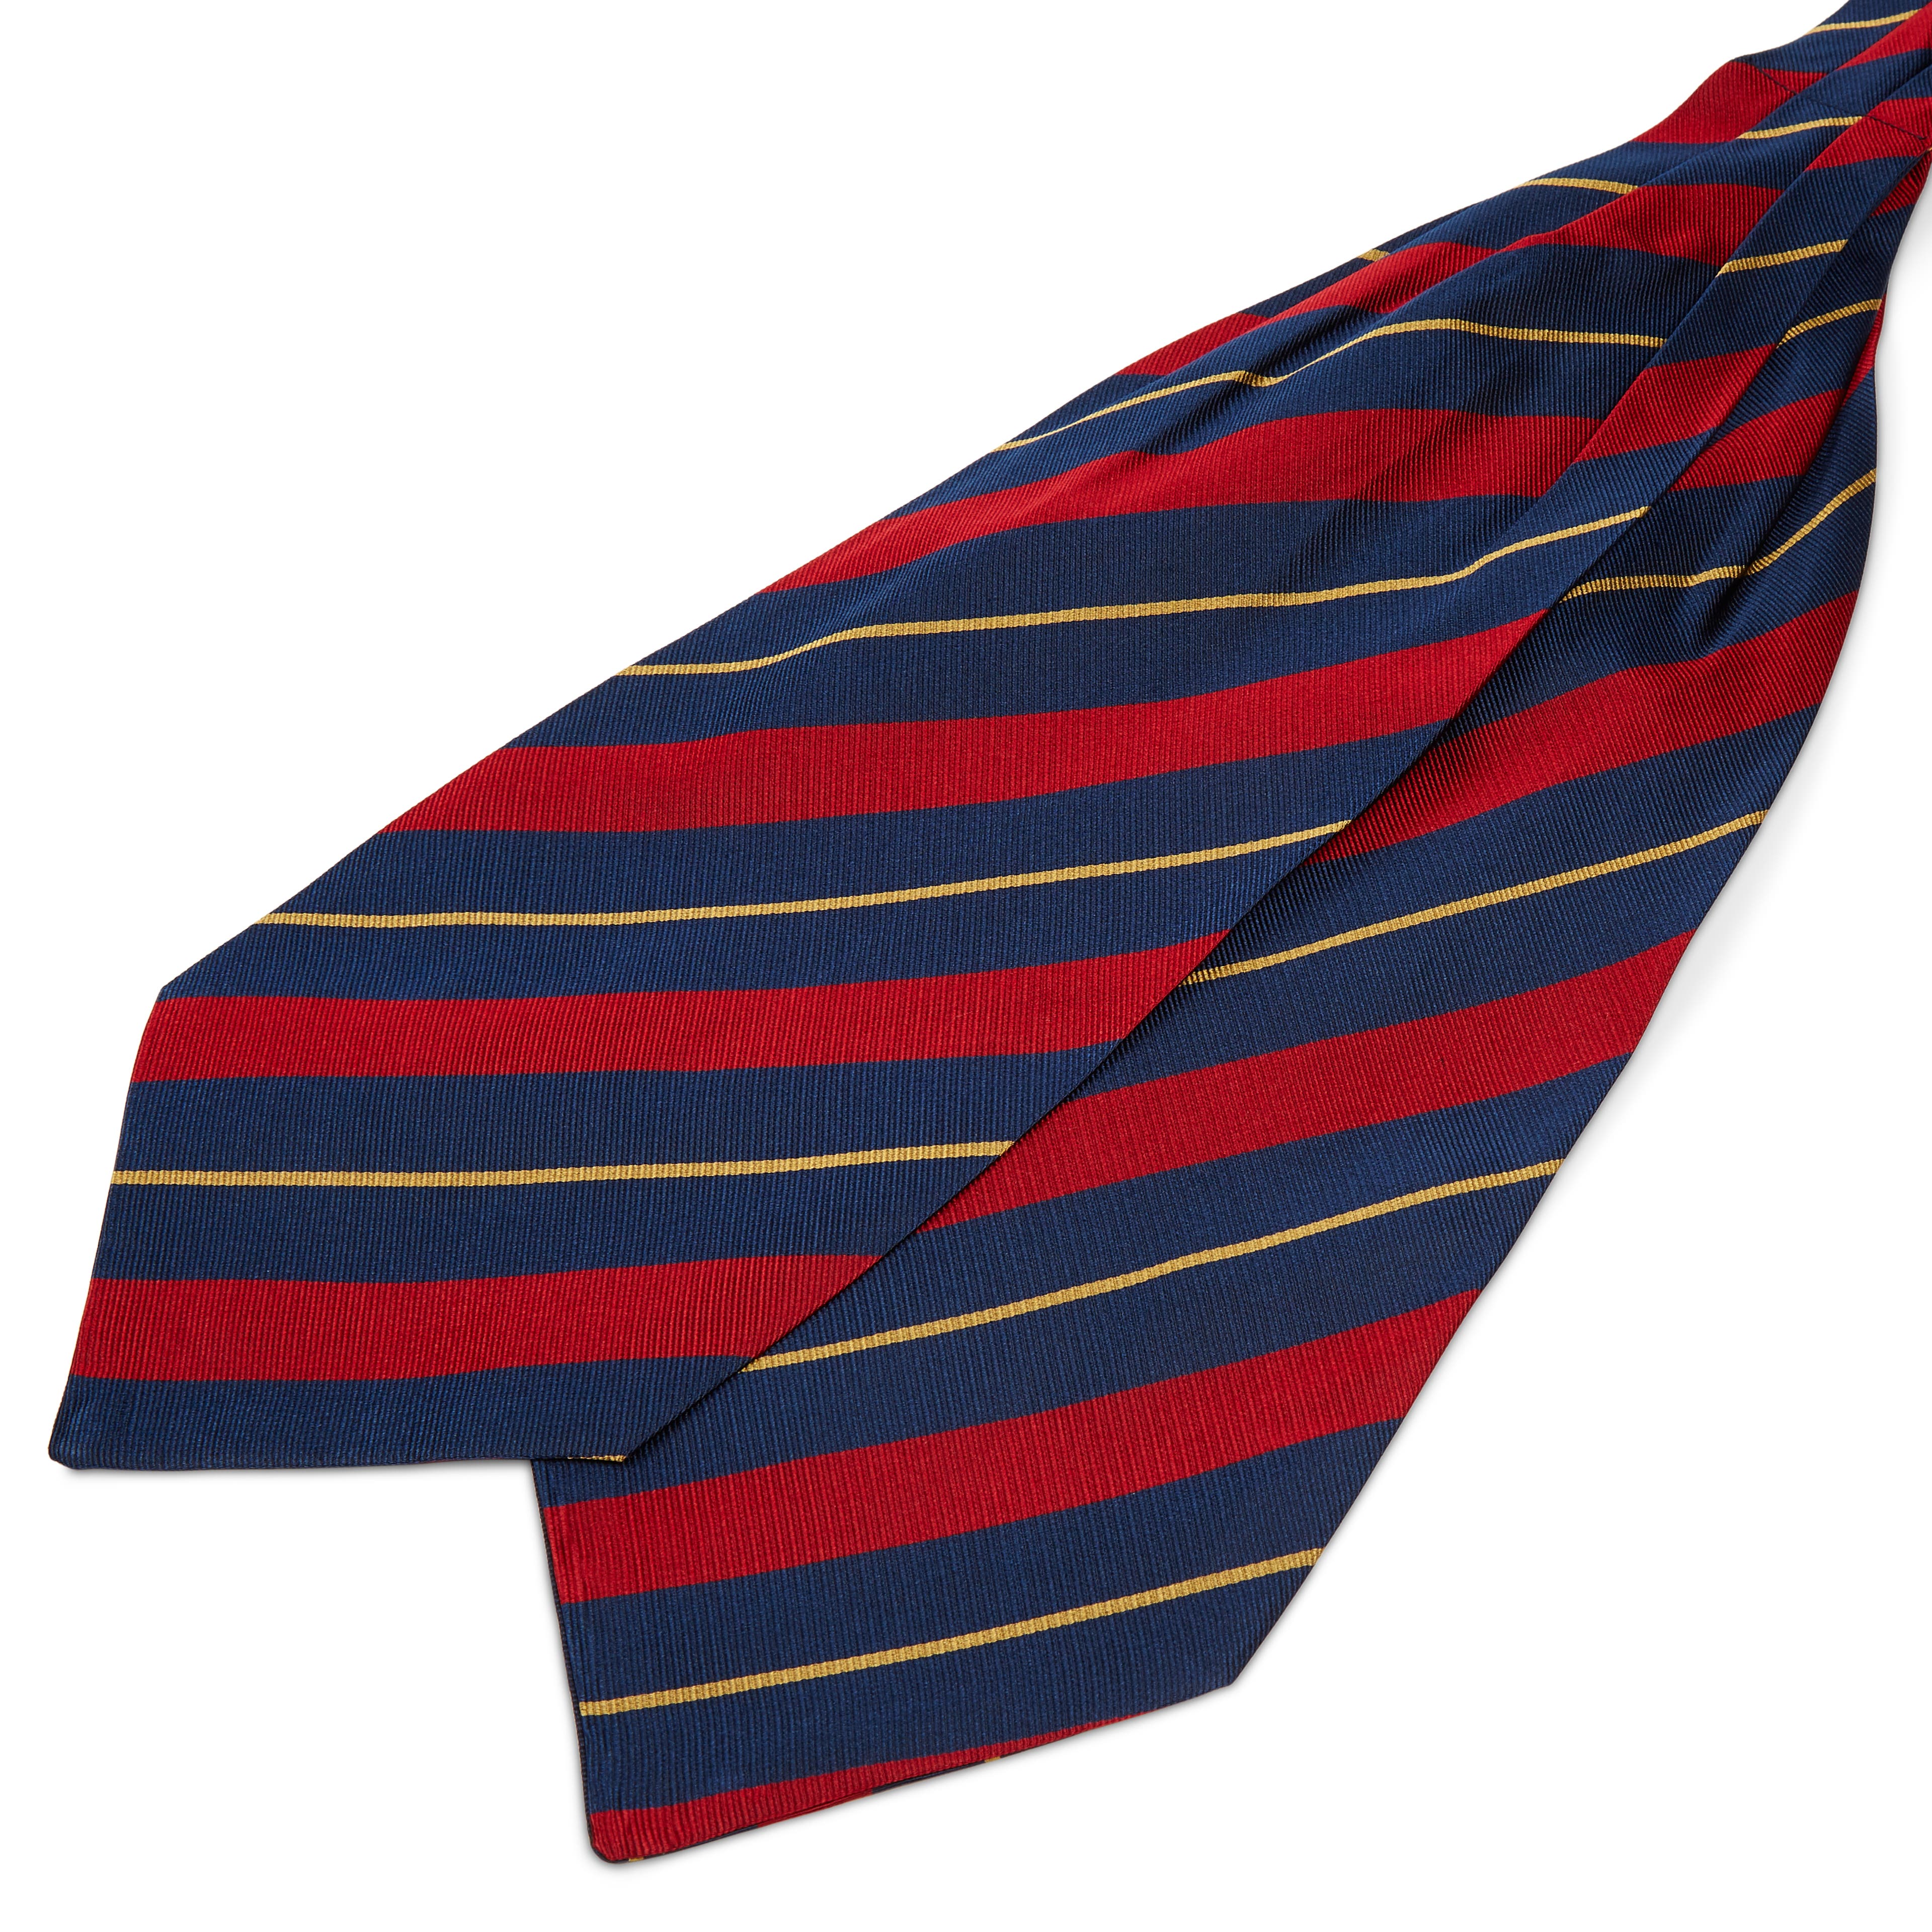 Ciemnogranatowy krawat jedwabny w czerwono-złote paski